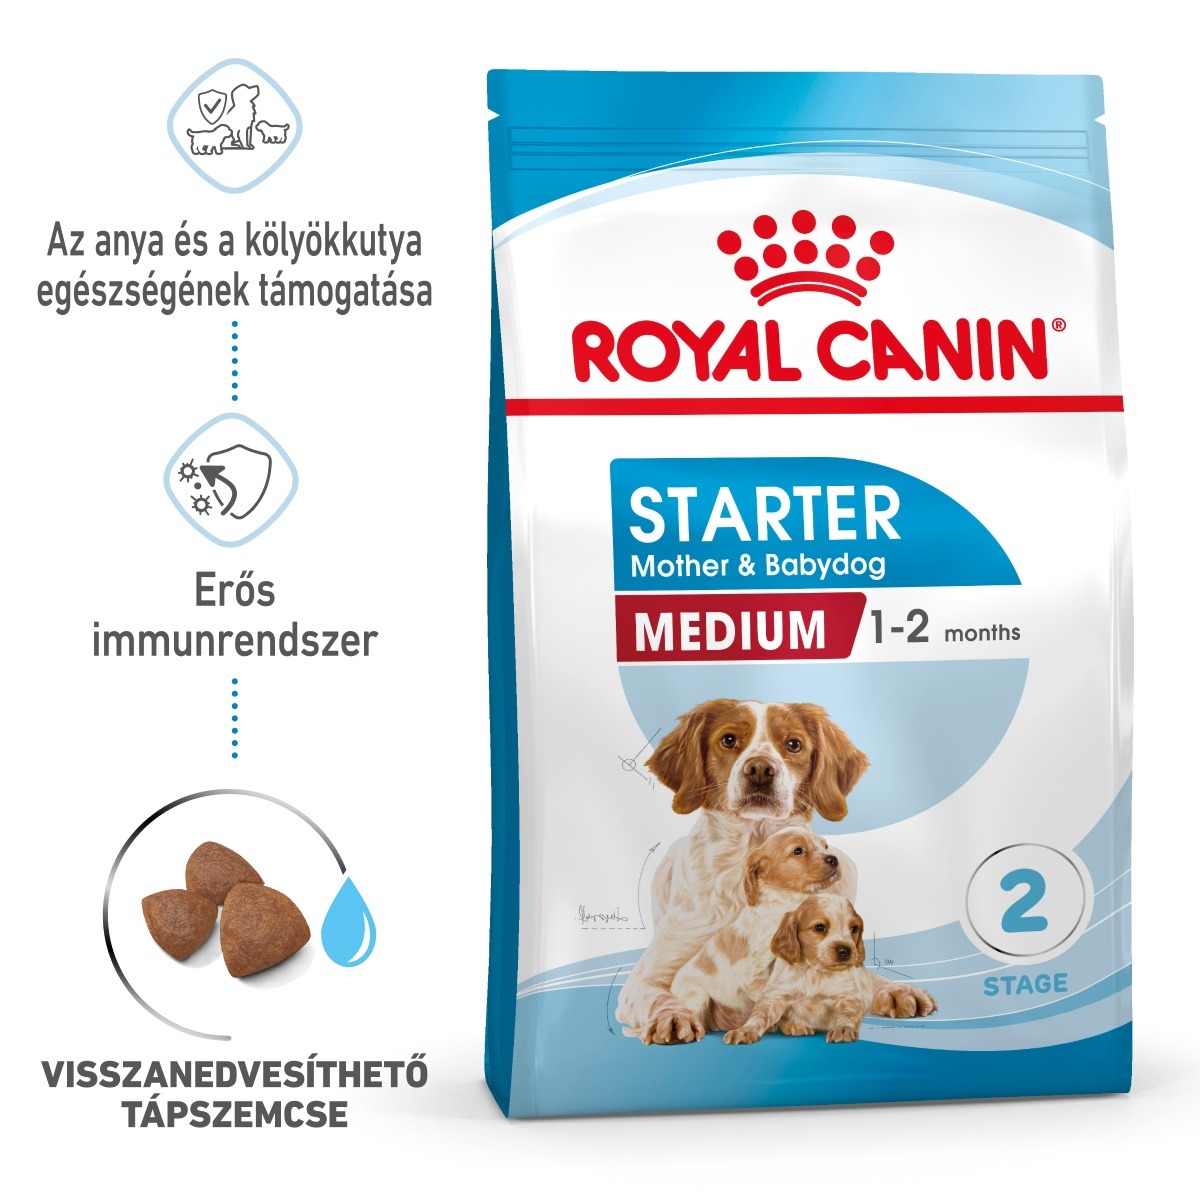 Royal Canin Medium Starter Mother & Babydog - közepes testű kölyök vemhes kutya száraz táp 15 kg